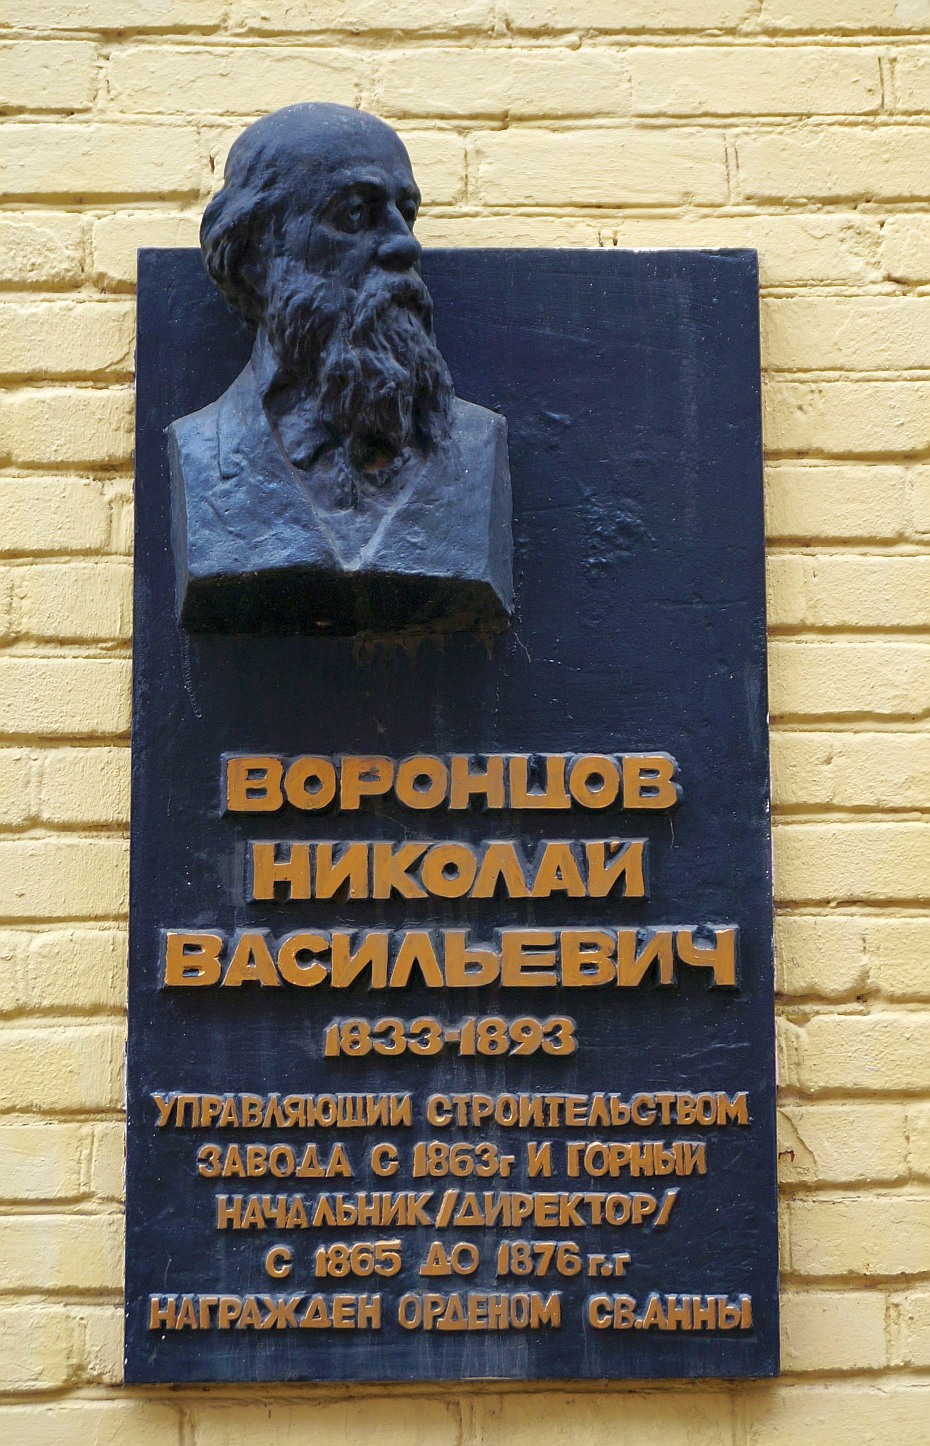 Perm, Улица 1905 года, 35. Perm — Memorial plaques